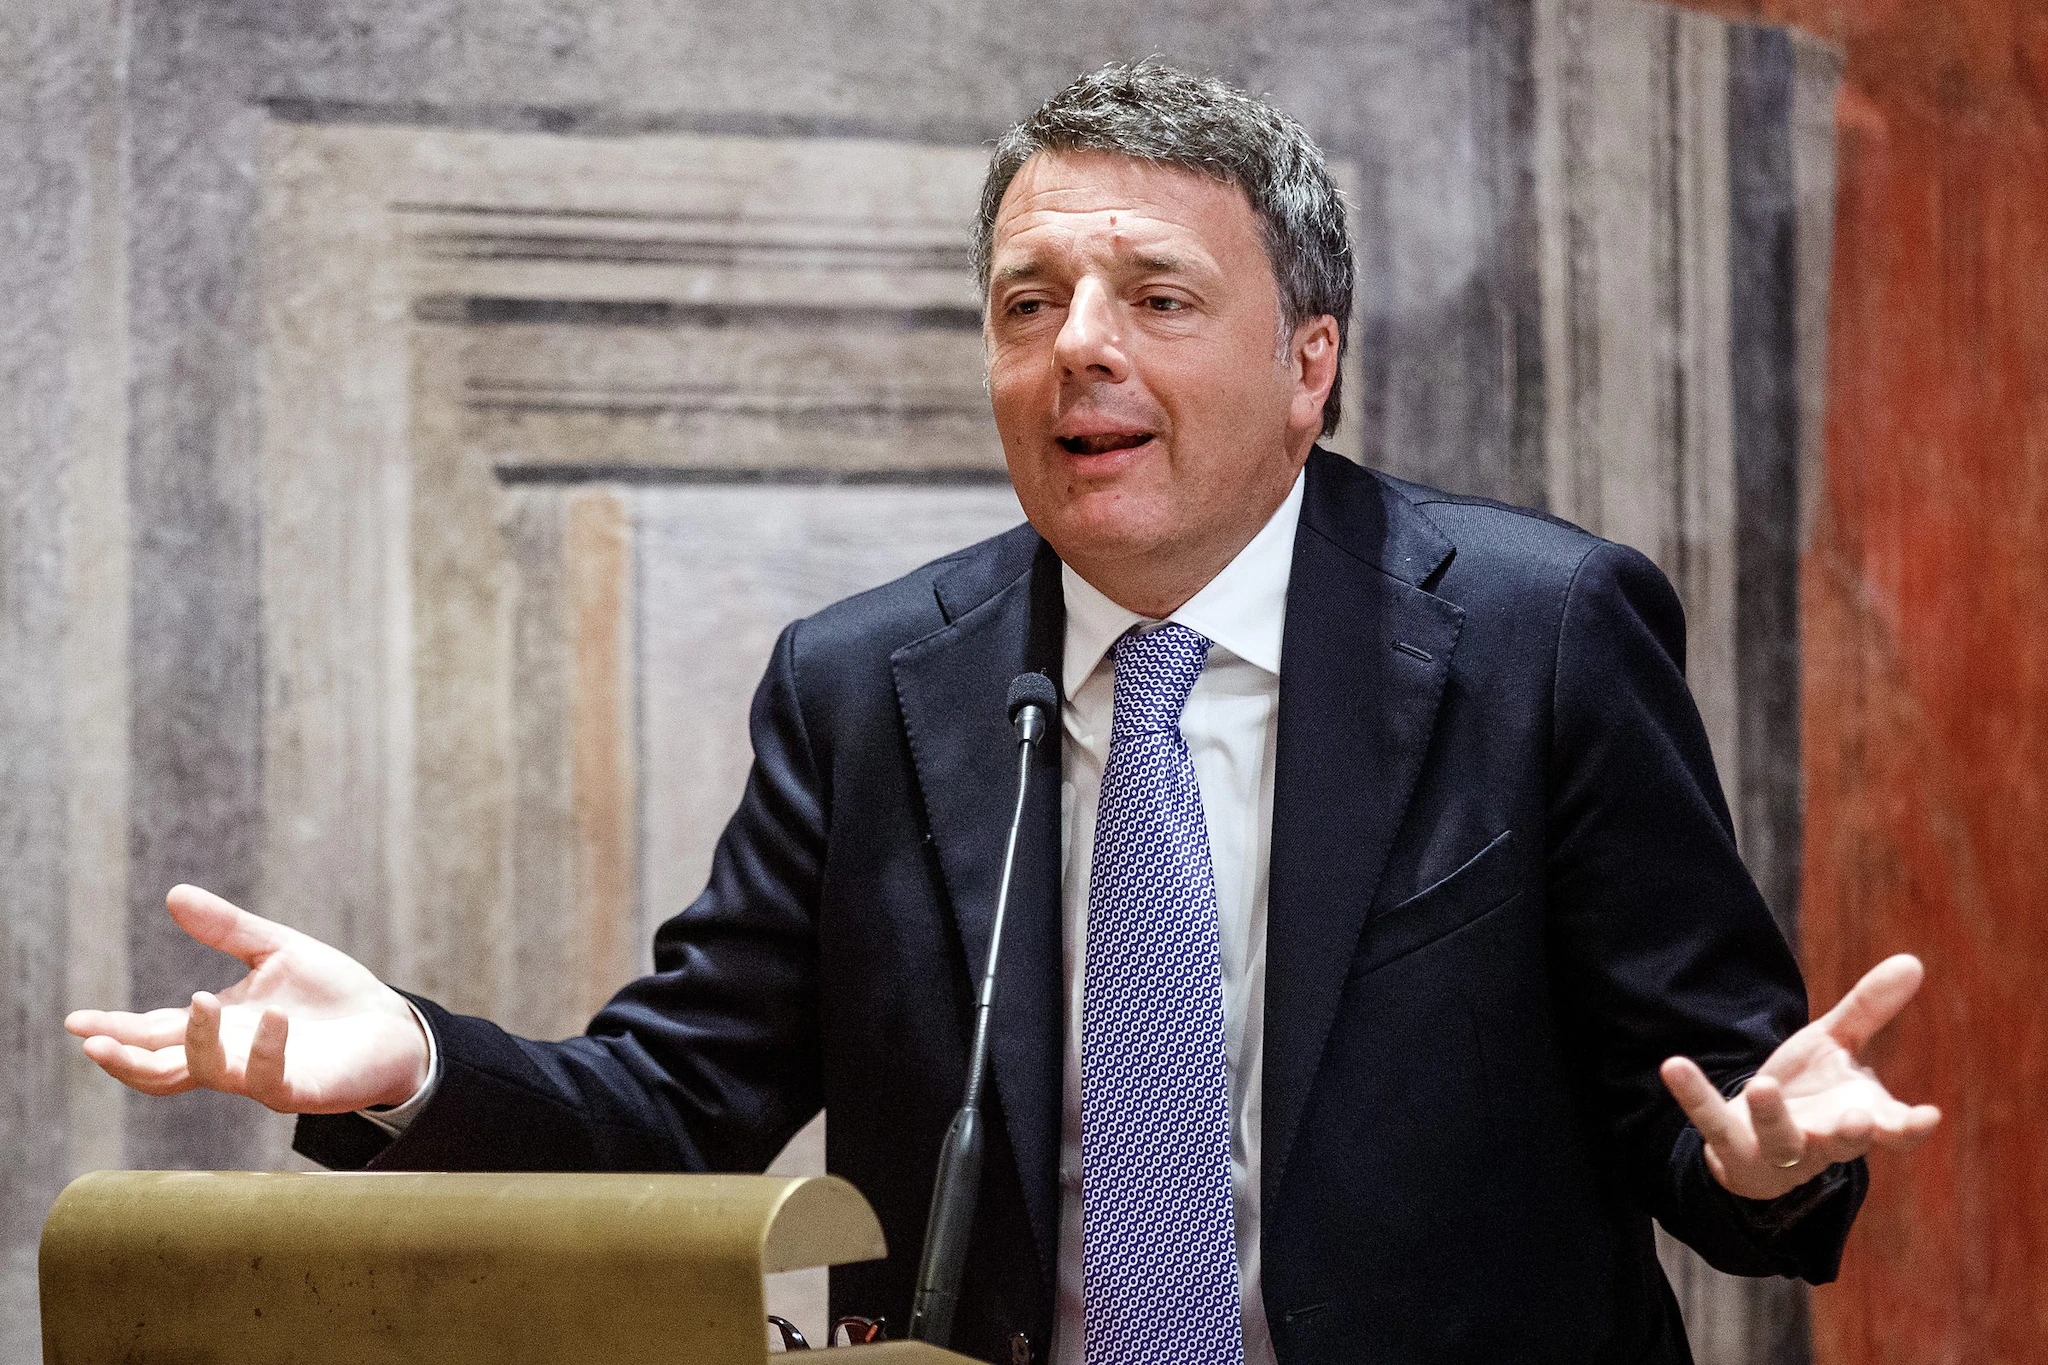 Jobs Act, Renzi invoca la scissione del Pd: "Amici riformisti, come potete stare ancora in quel partito?"